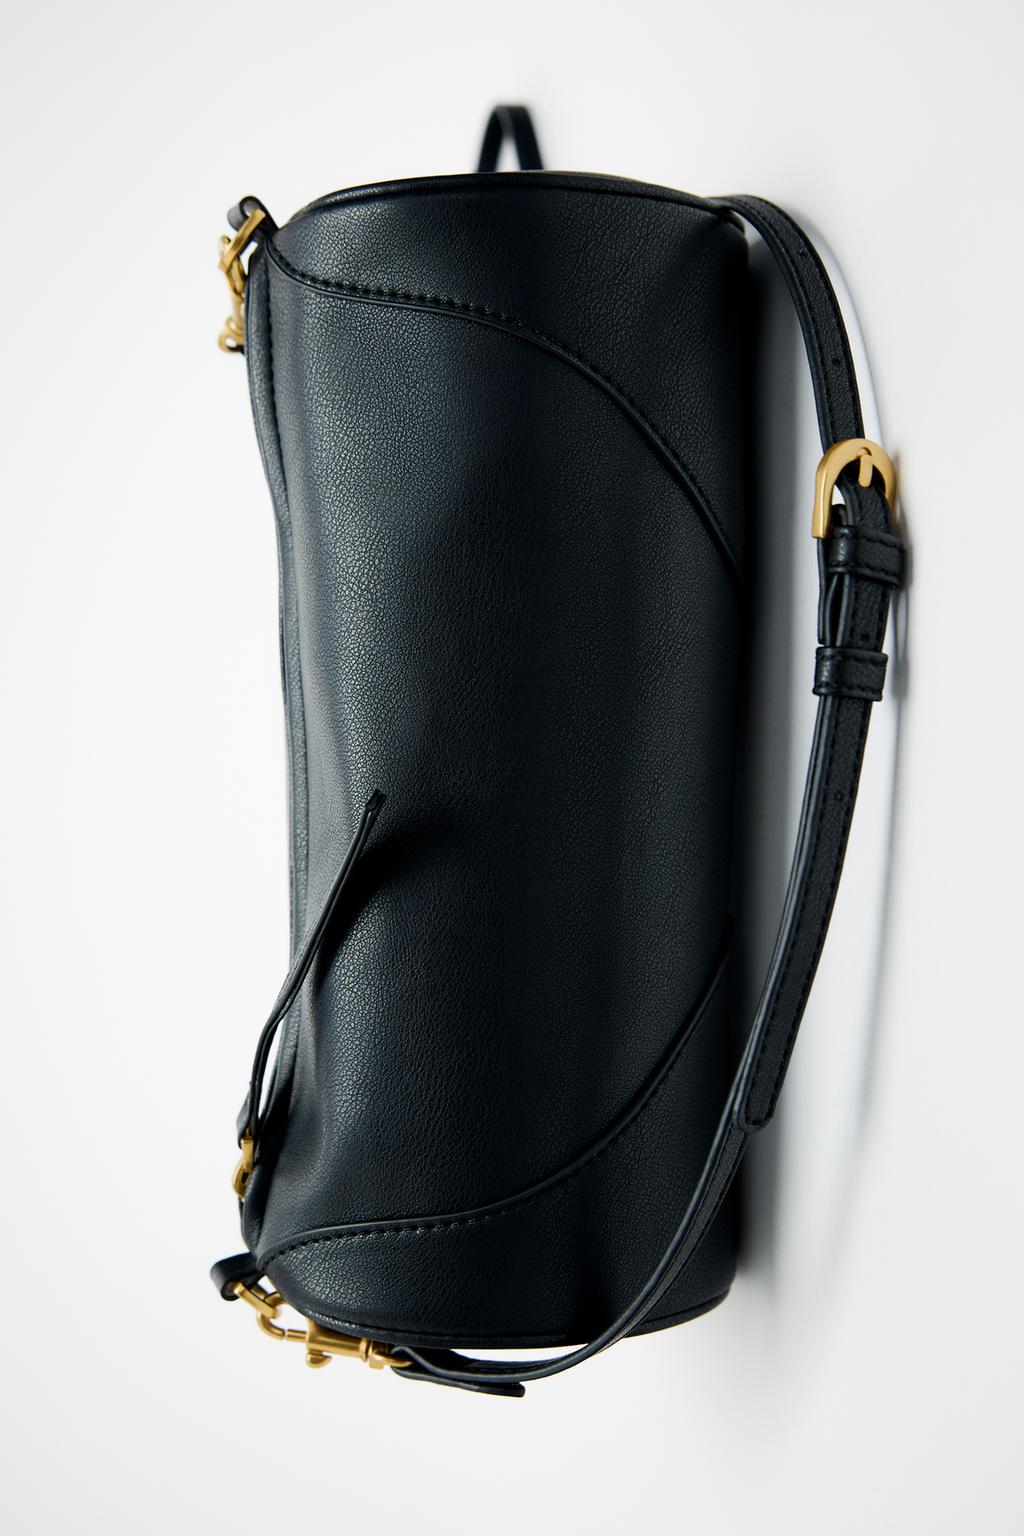 Цилиндрическая сумка на плече ZARA, черный широкая сумка через плечо сменный ремешок для кошелька цепочка для женской сумки ручная сумка аксессуары регулируемый ремень для сумок